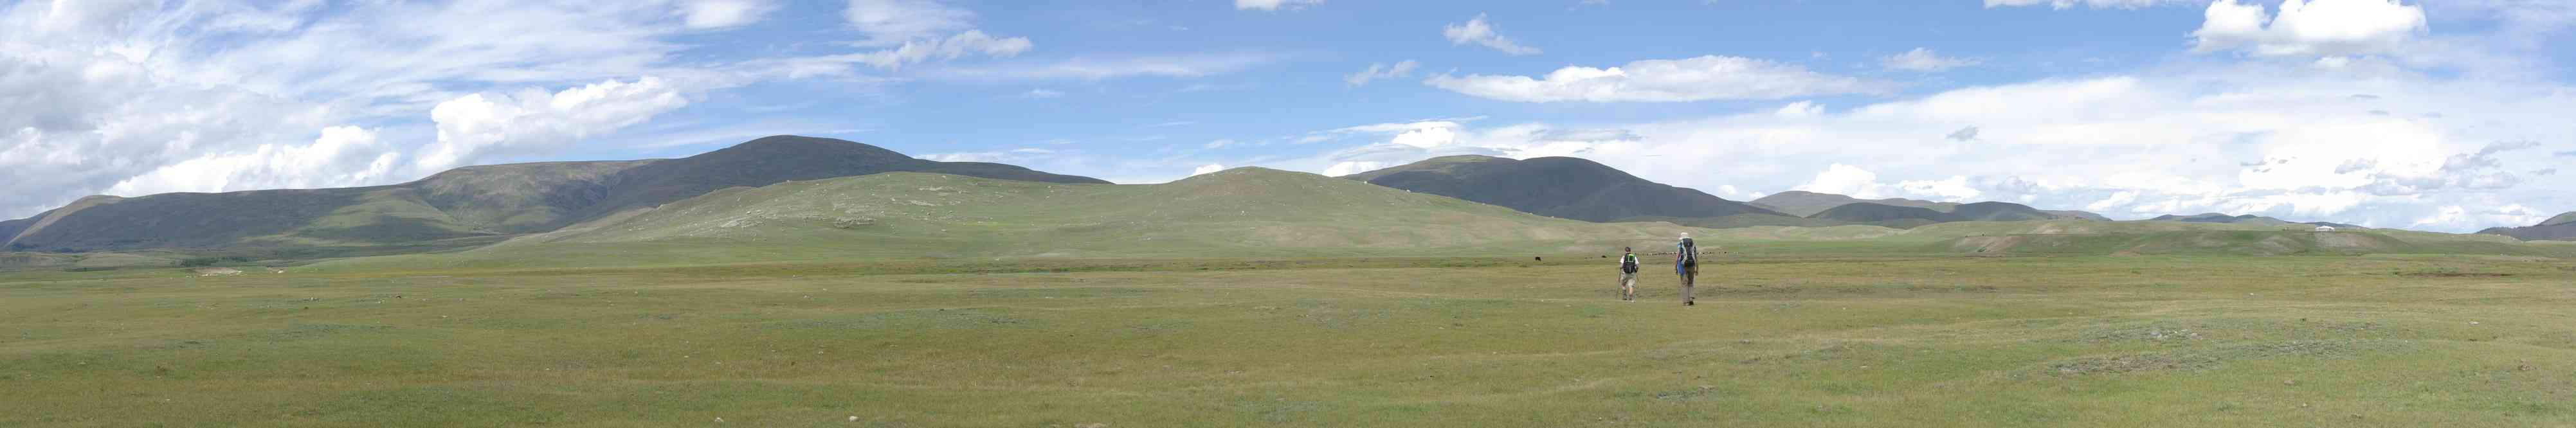 Marche dans la steppe mongole, le 13 août 2013